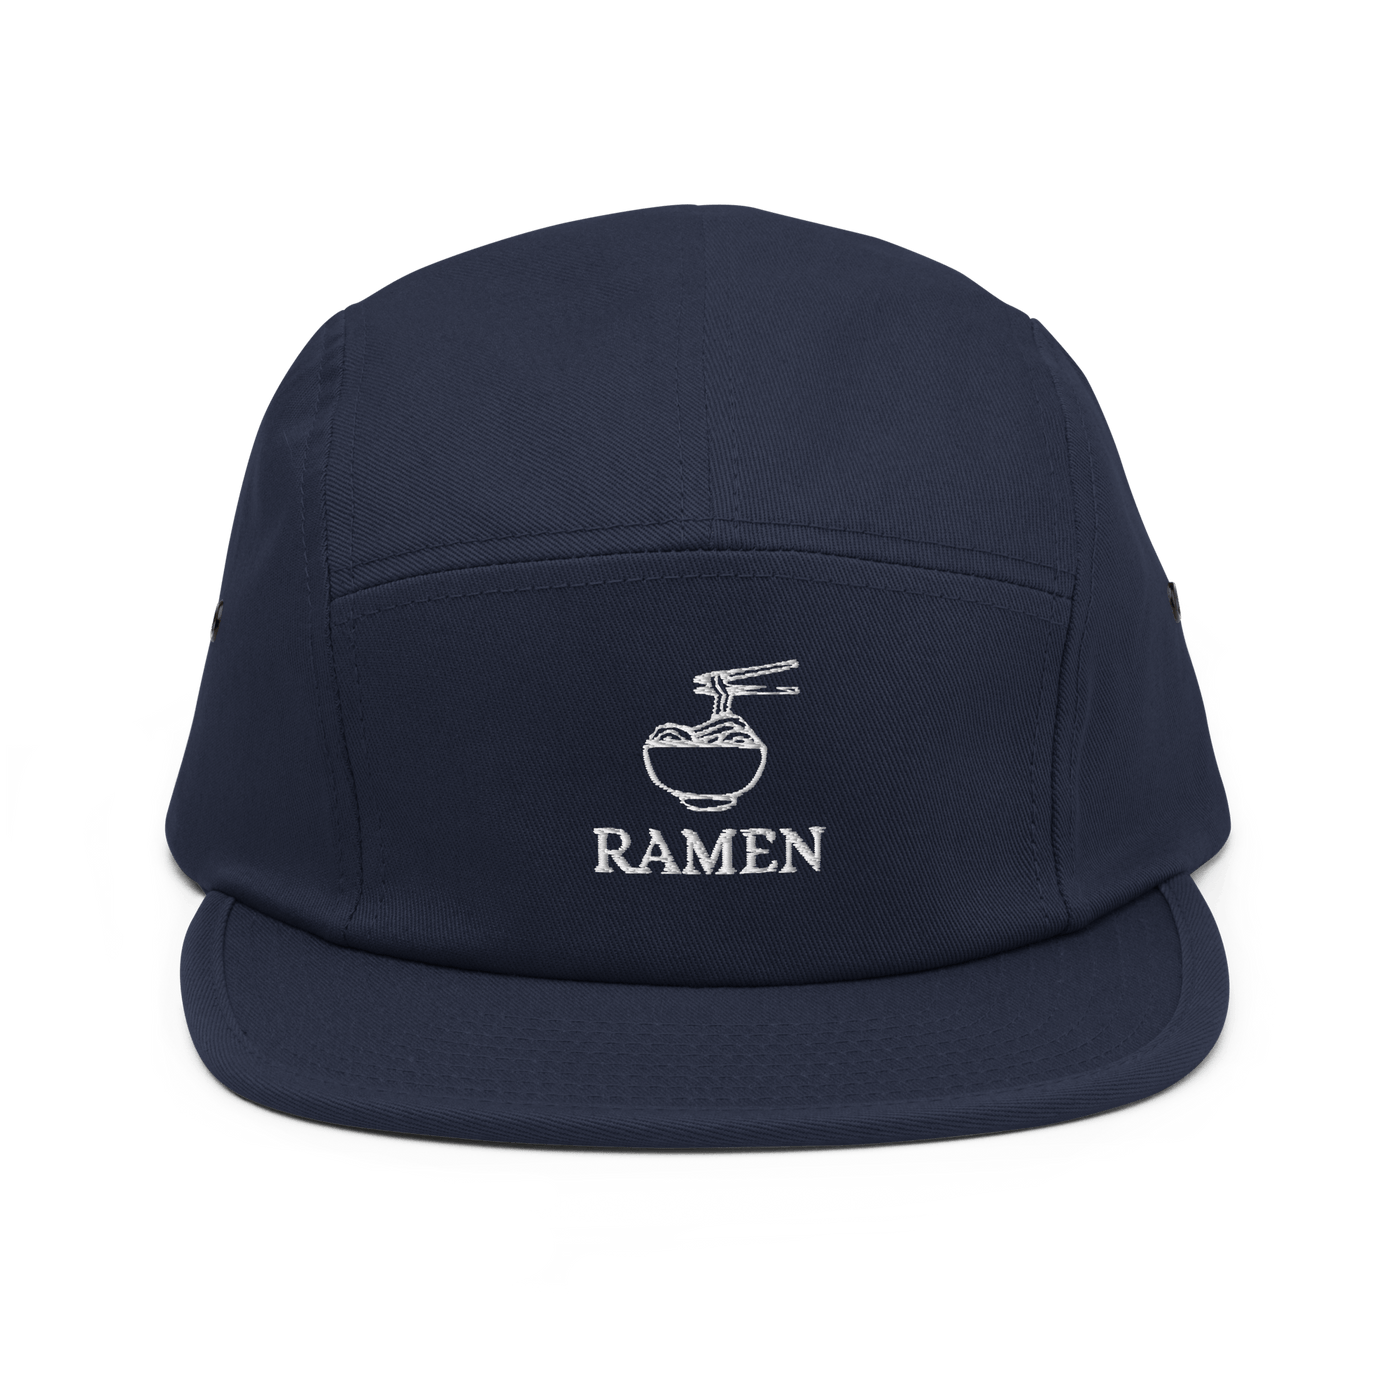 Ramen Five Panel Cap - Navy - - Just Another Cap Store